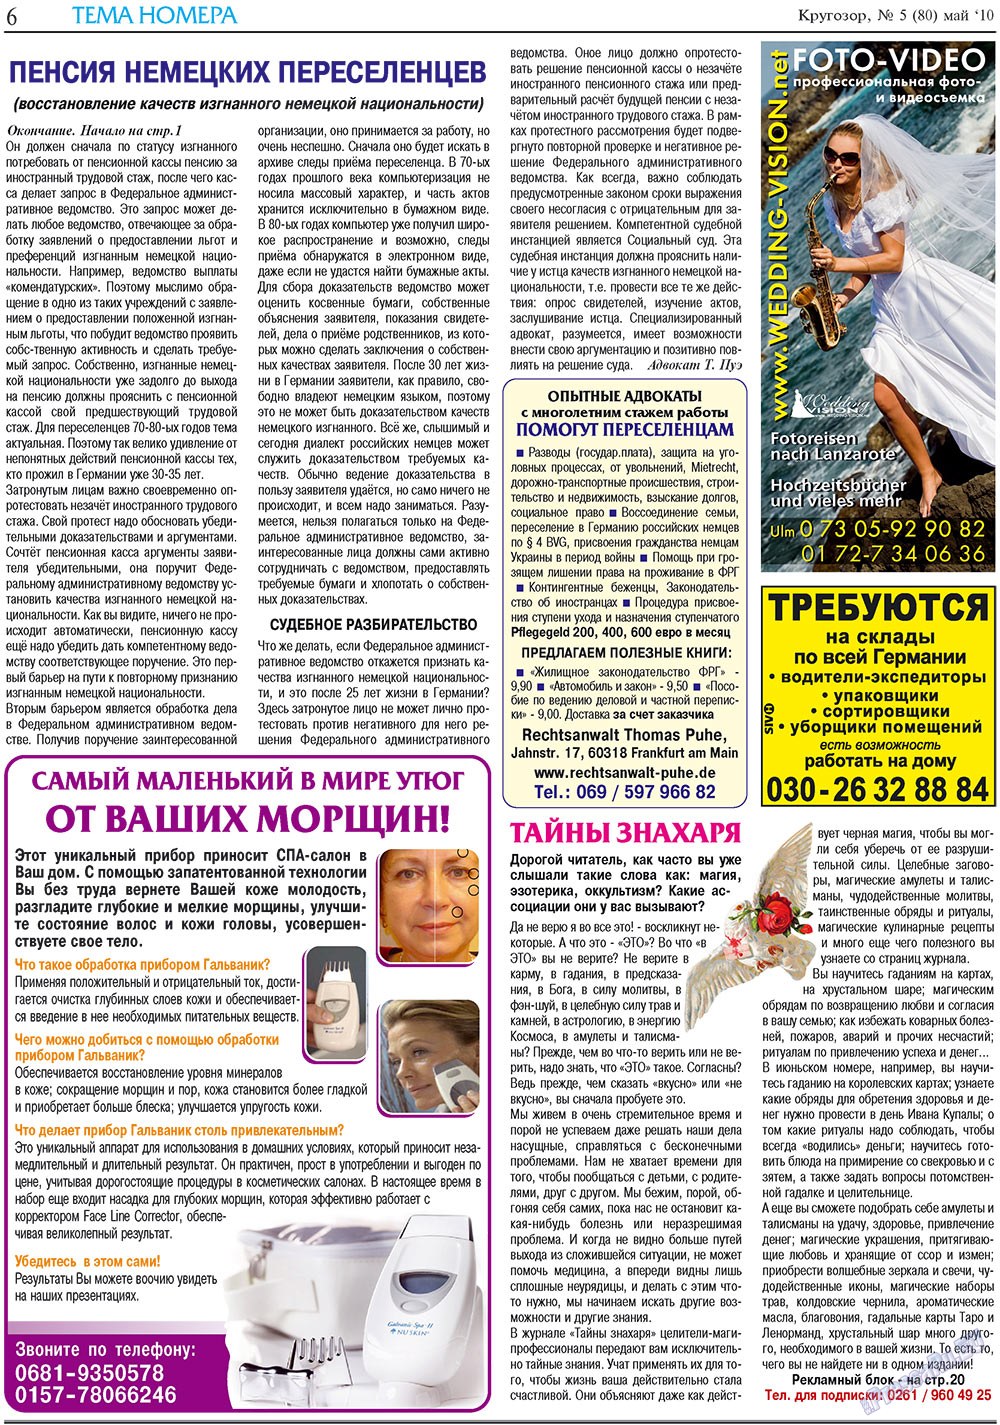 Кругозор плюс!, газета. 2010 №5 стр.6